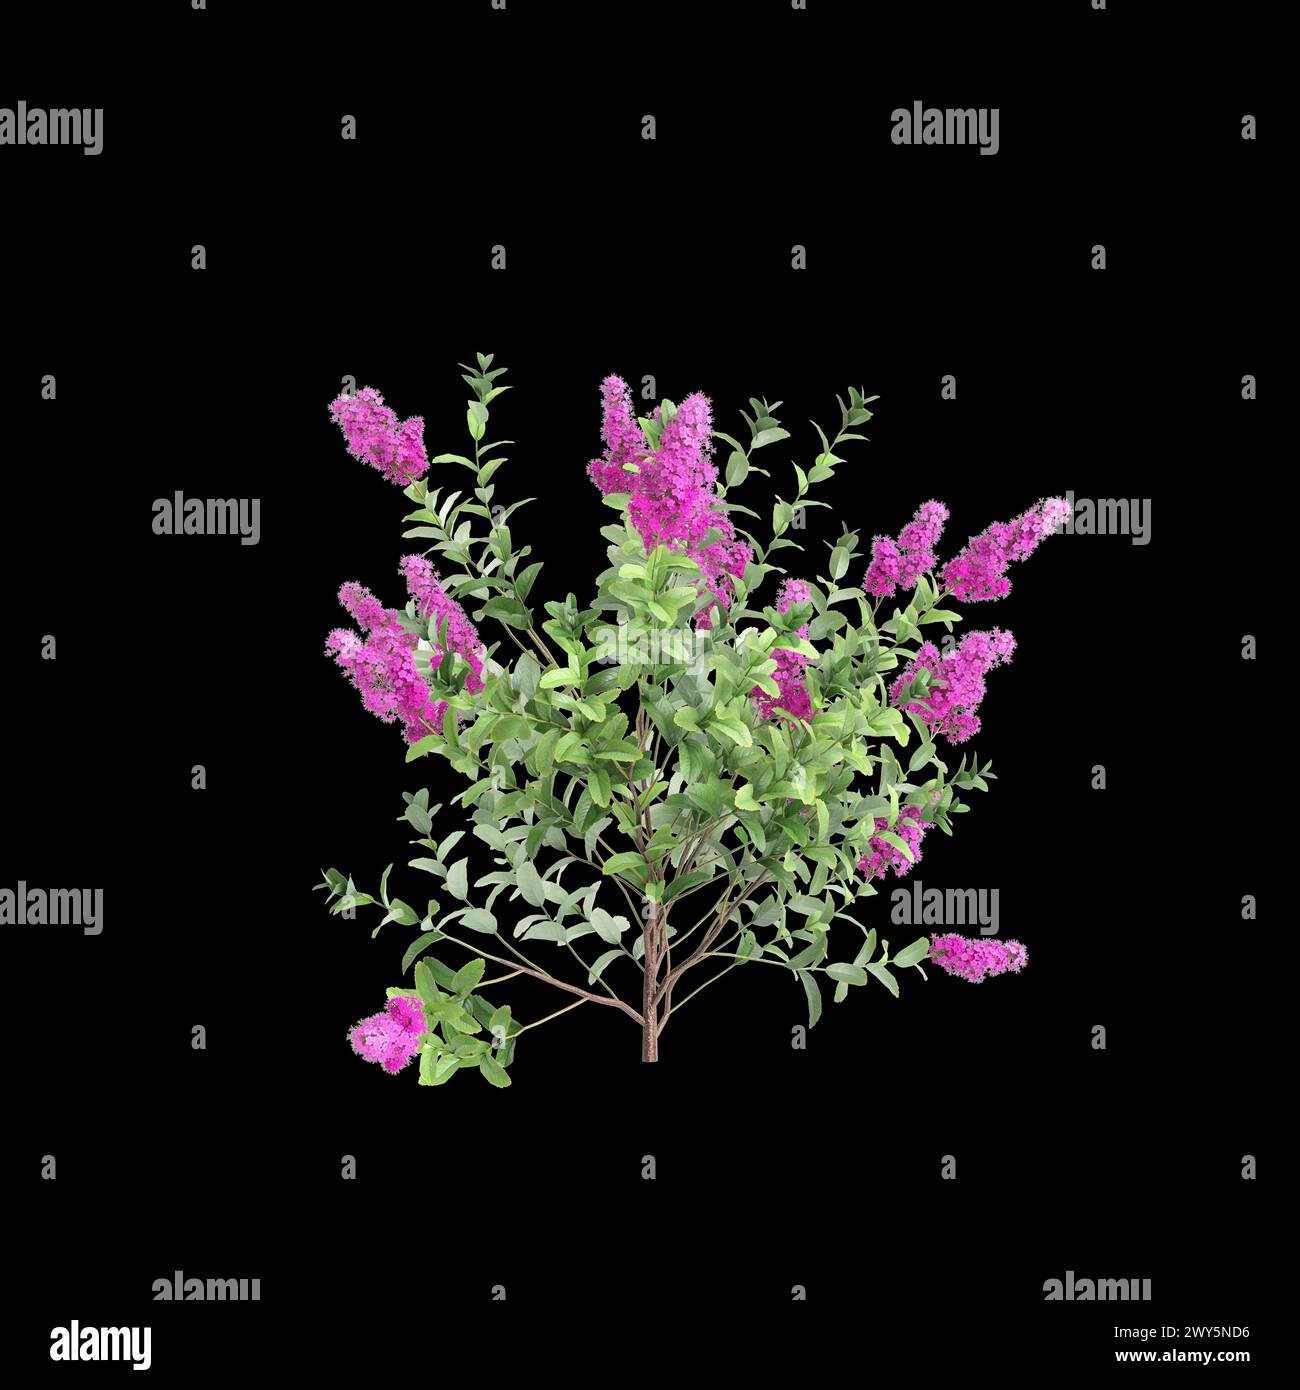 3d illustration of Spiraea douglasii bush isolated on black background Stock Photo